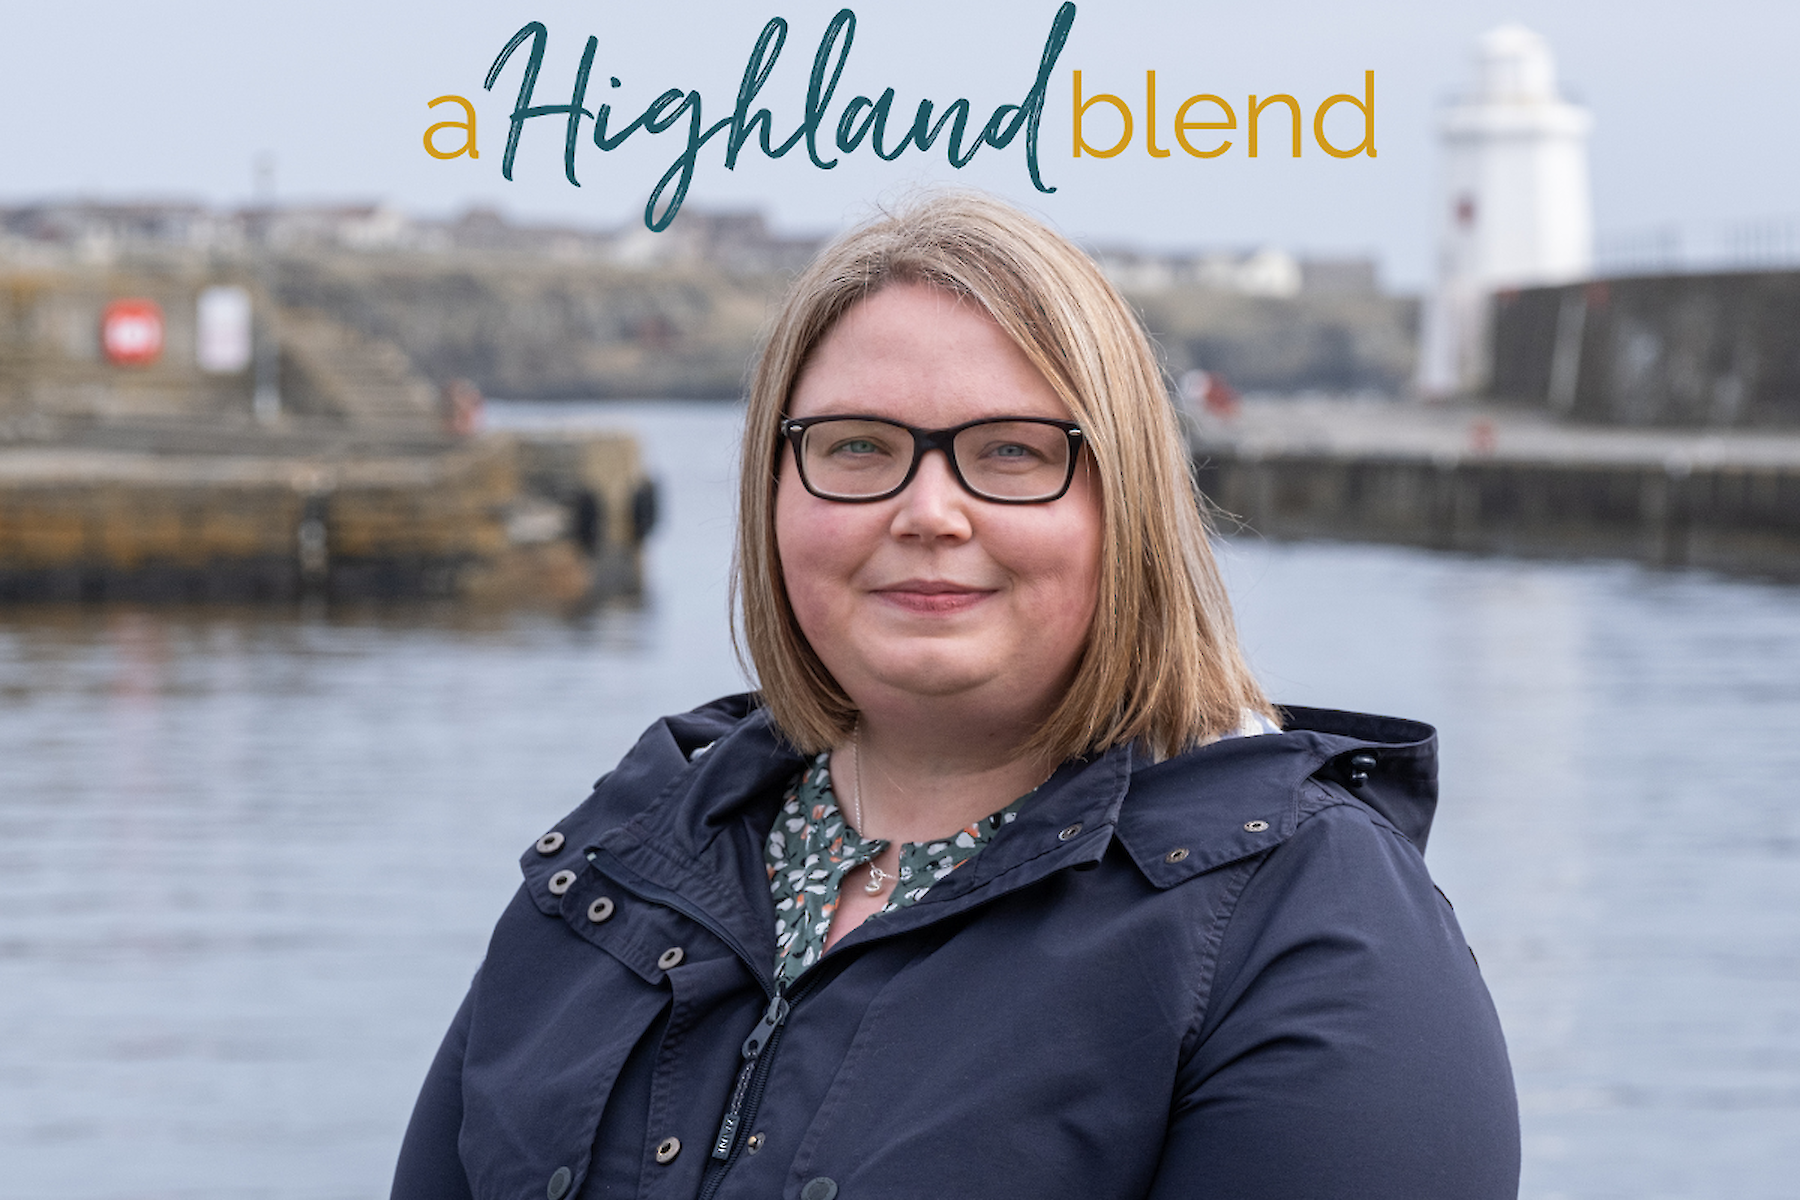 A Highland Blend